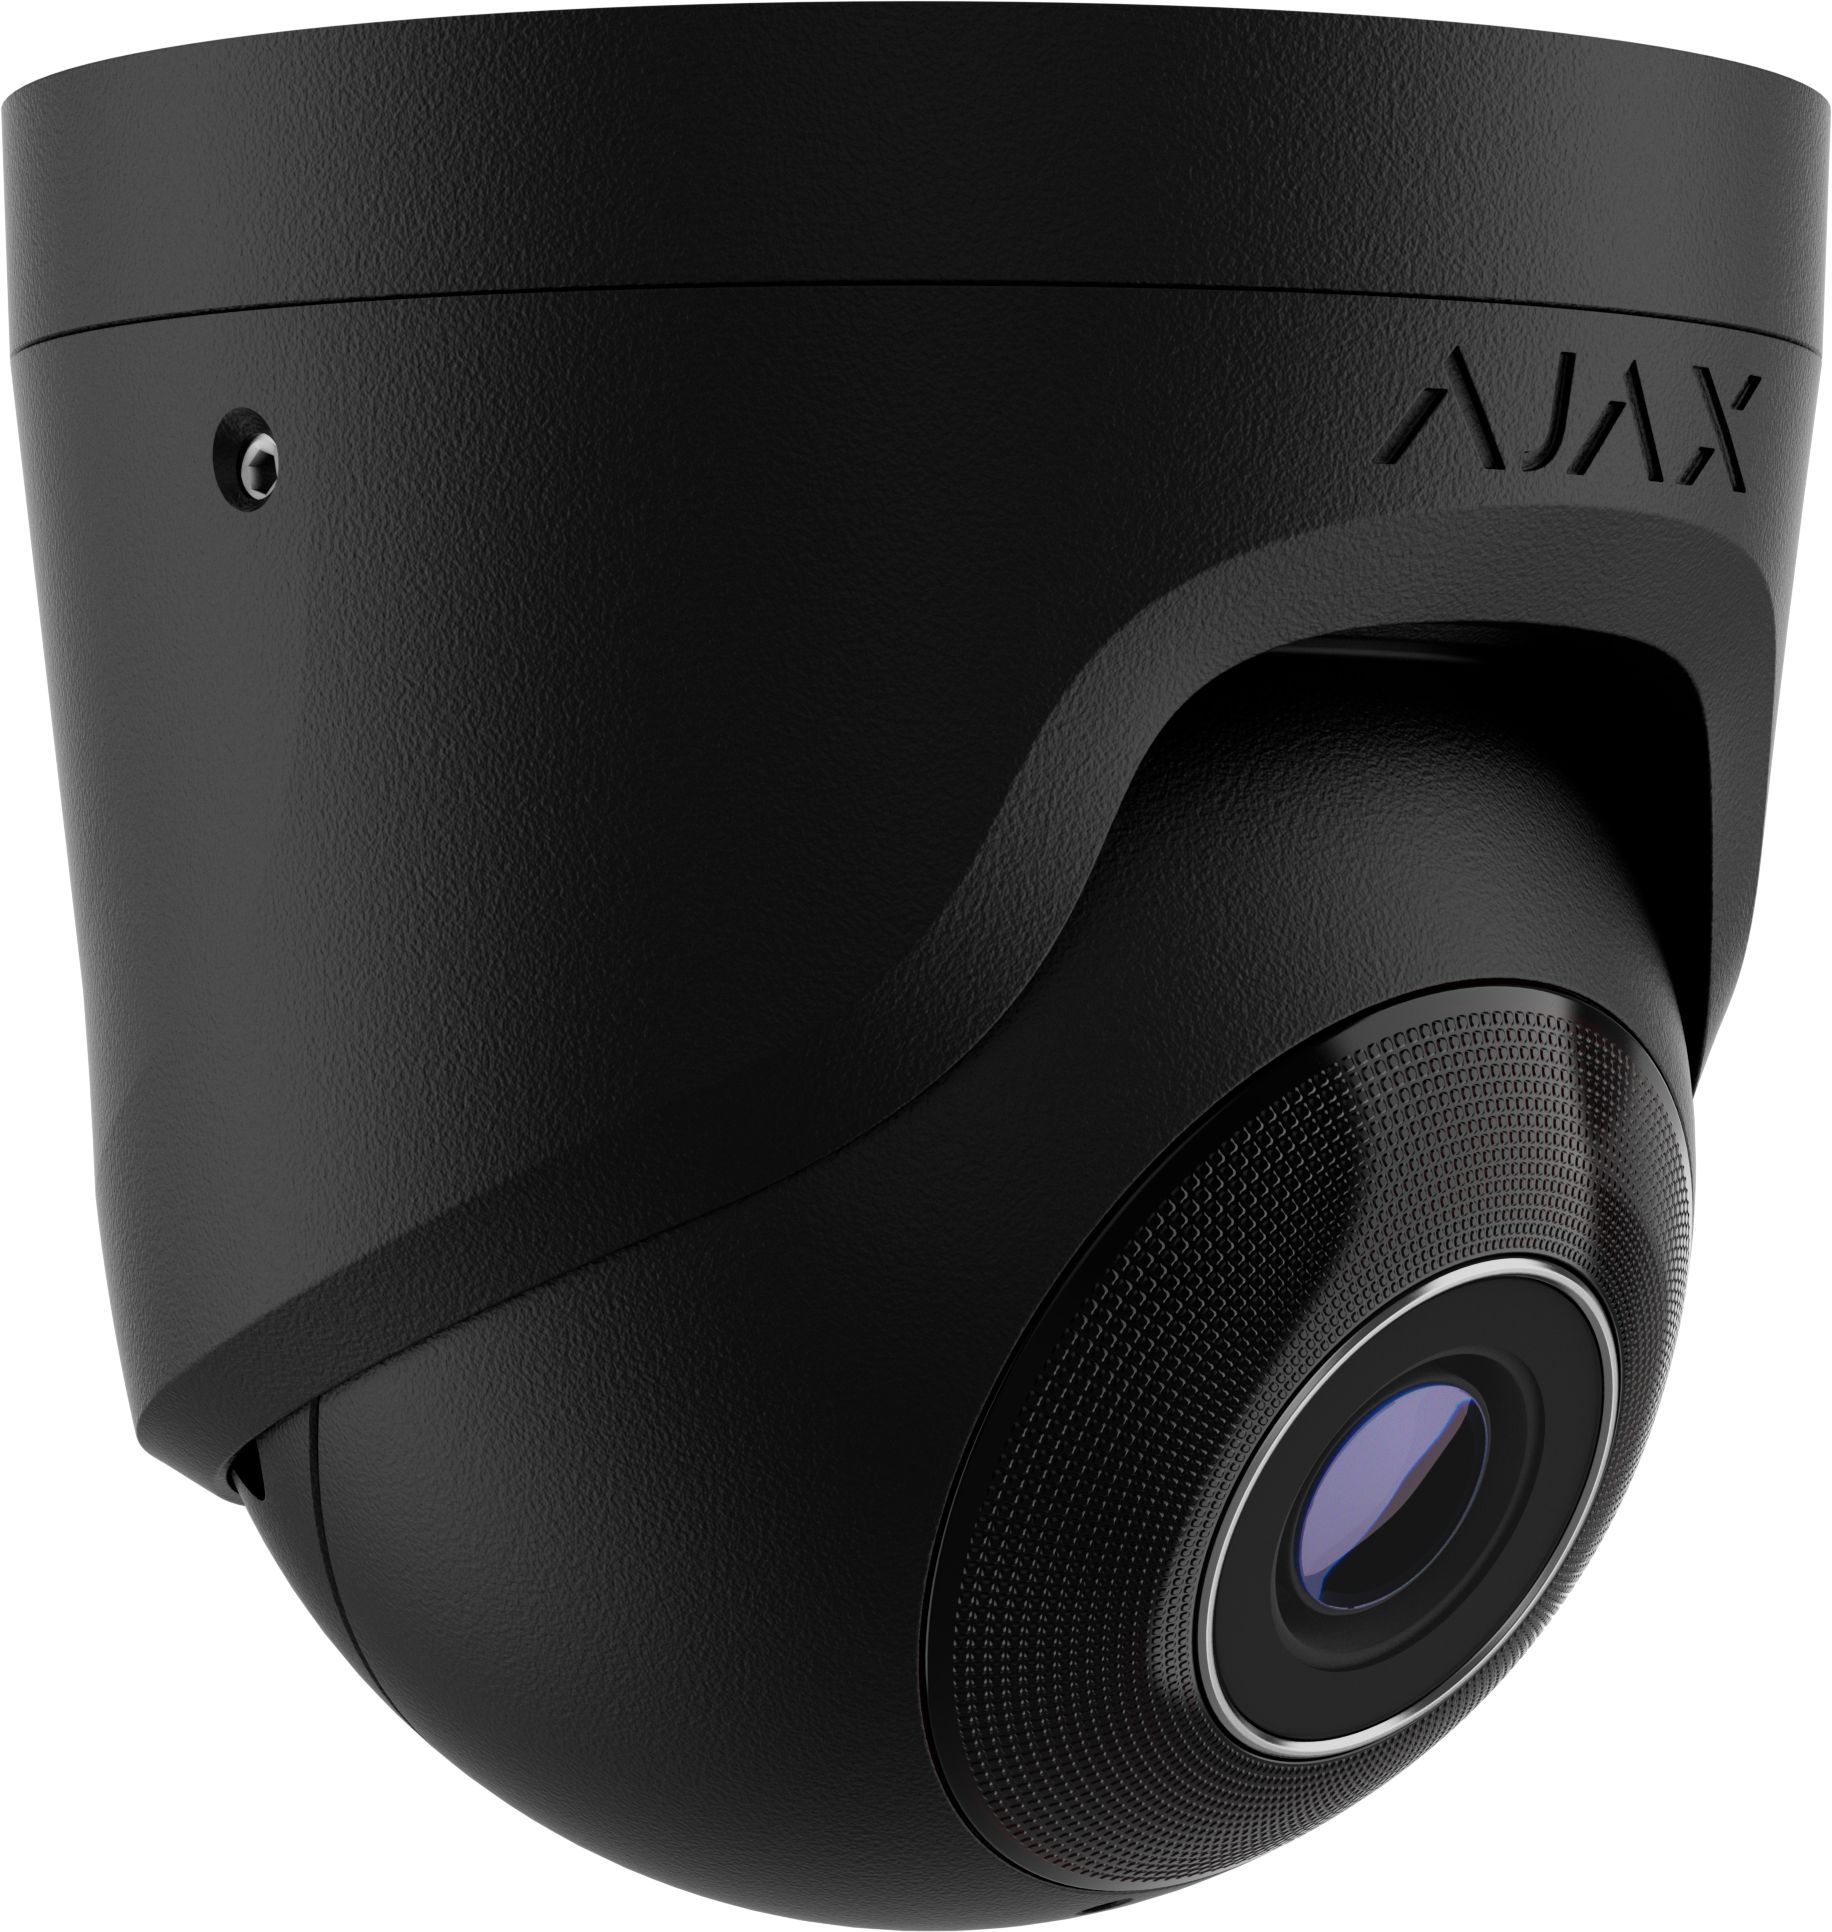 AJAX - TurretCam (8MP/4 mm) | Digital Key World